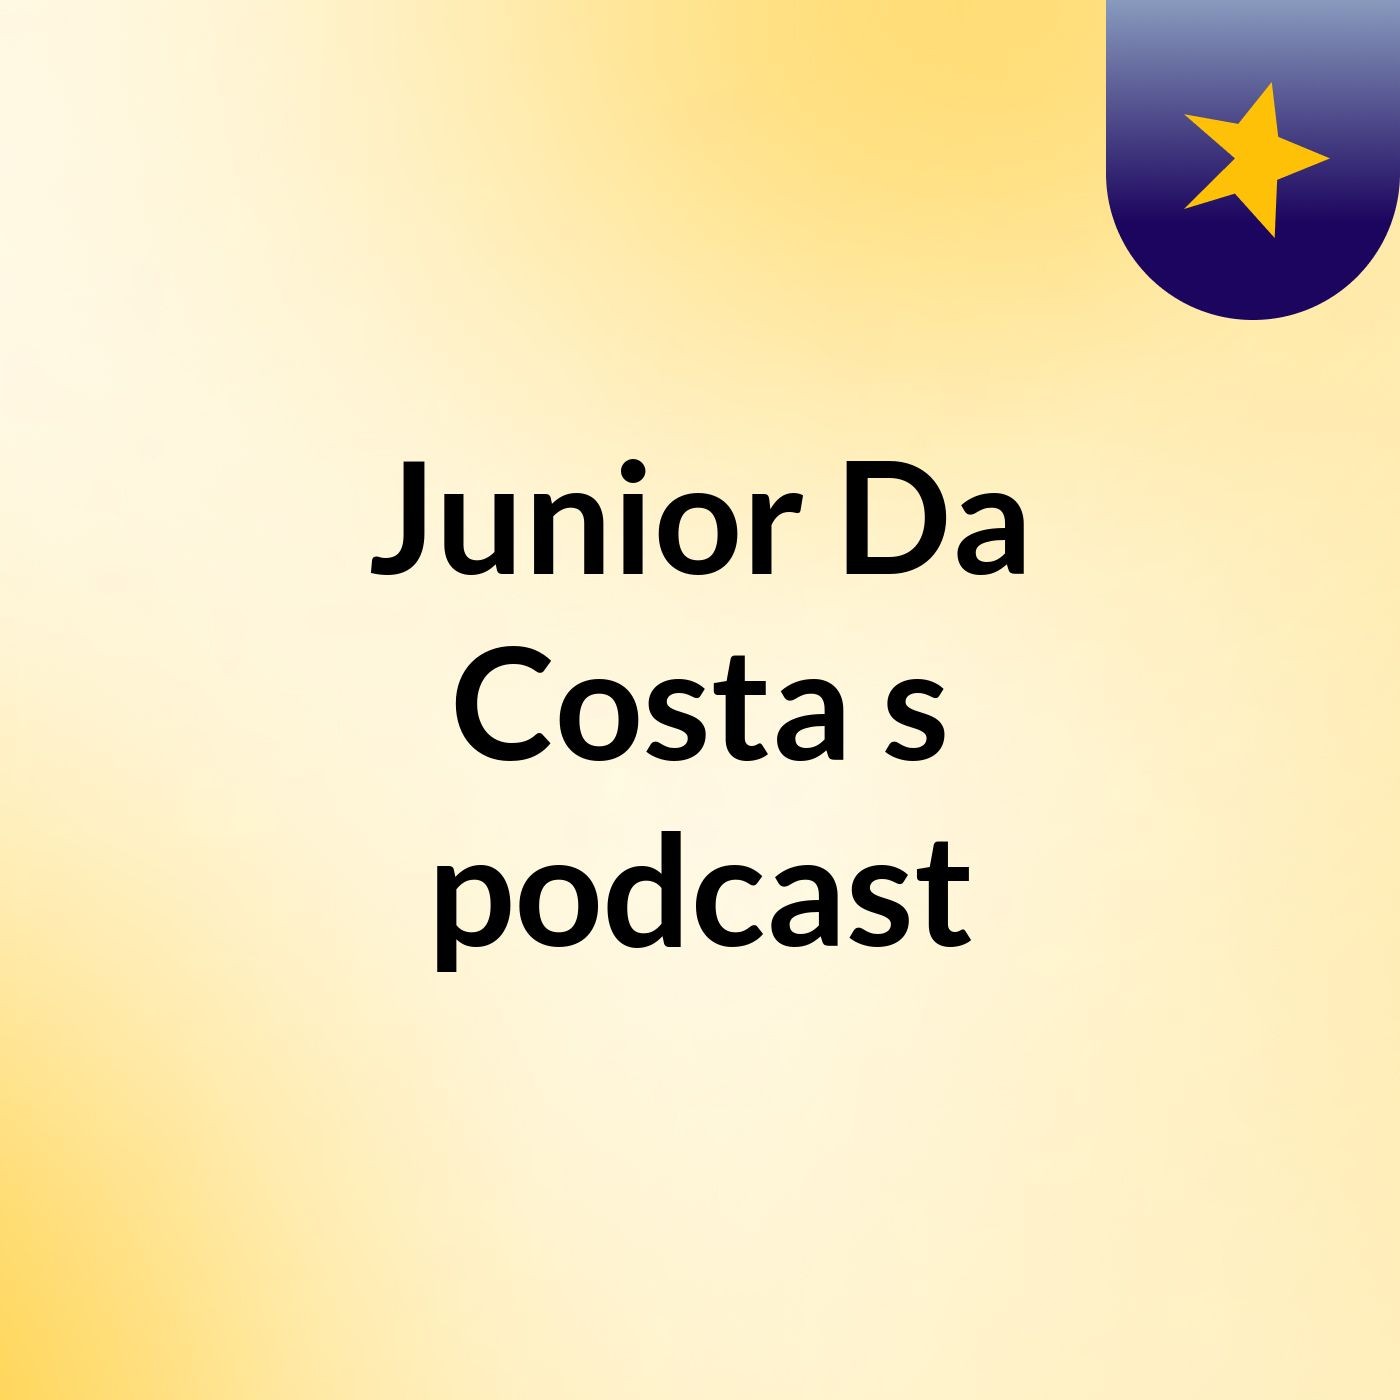 Episode 10 - Junior Da Costa's podcast